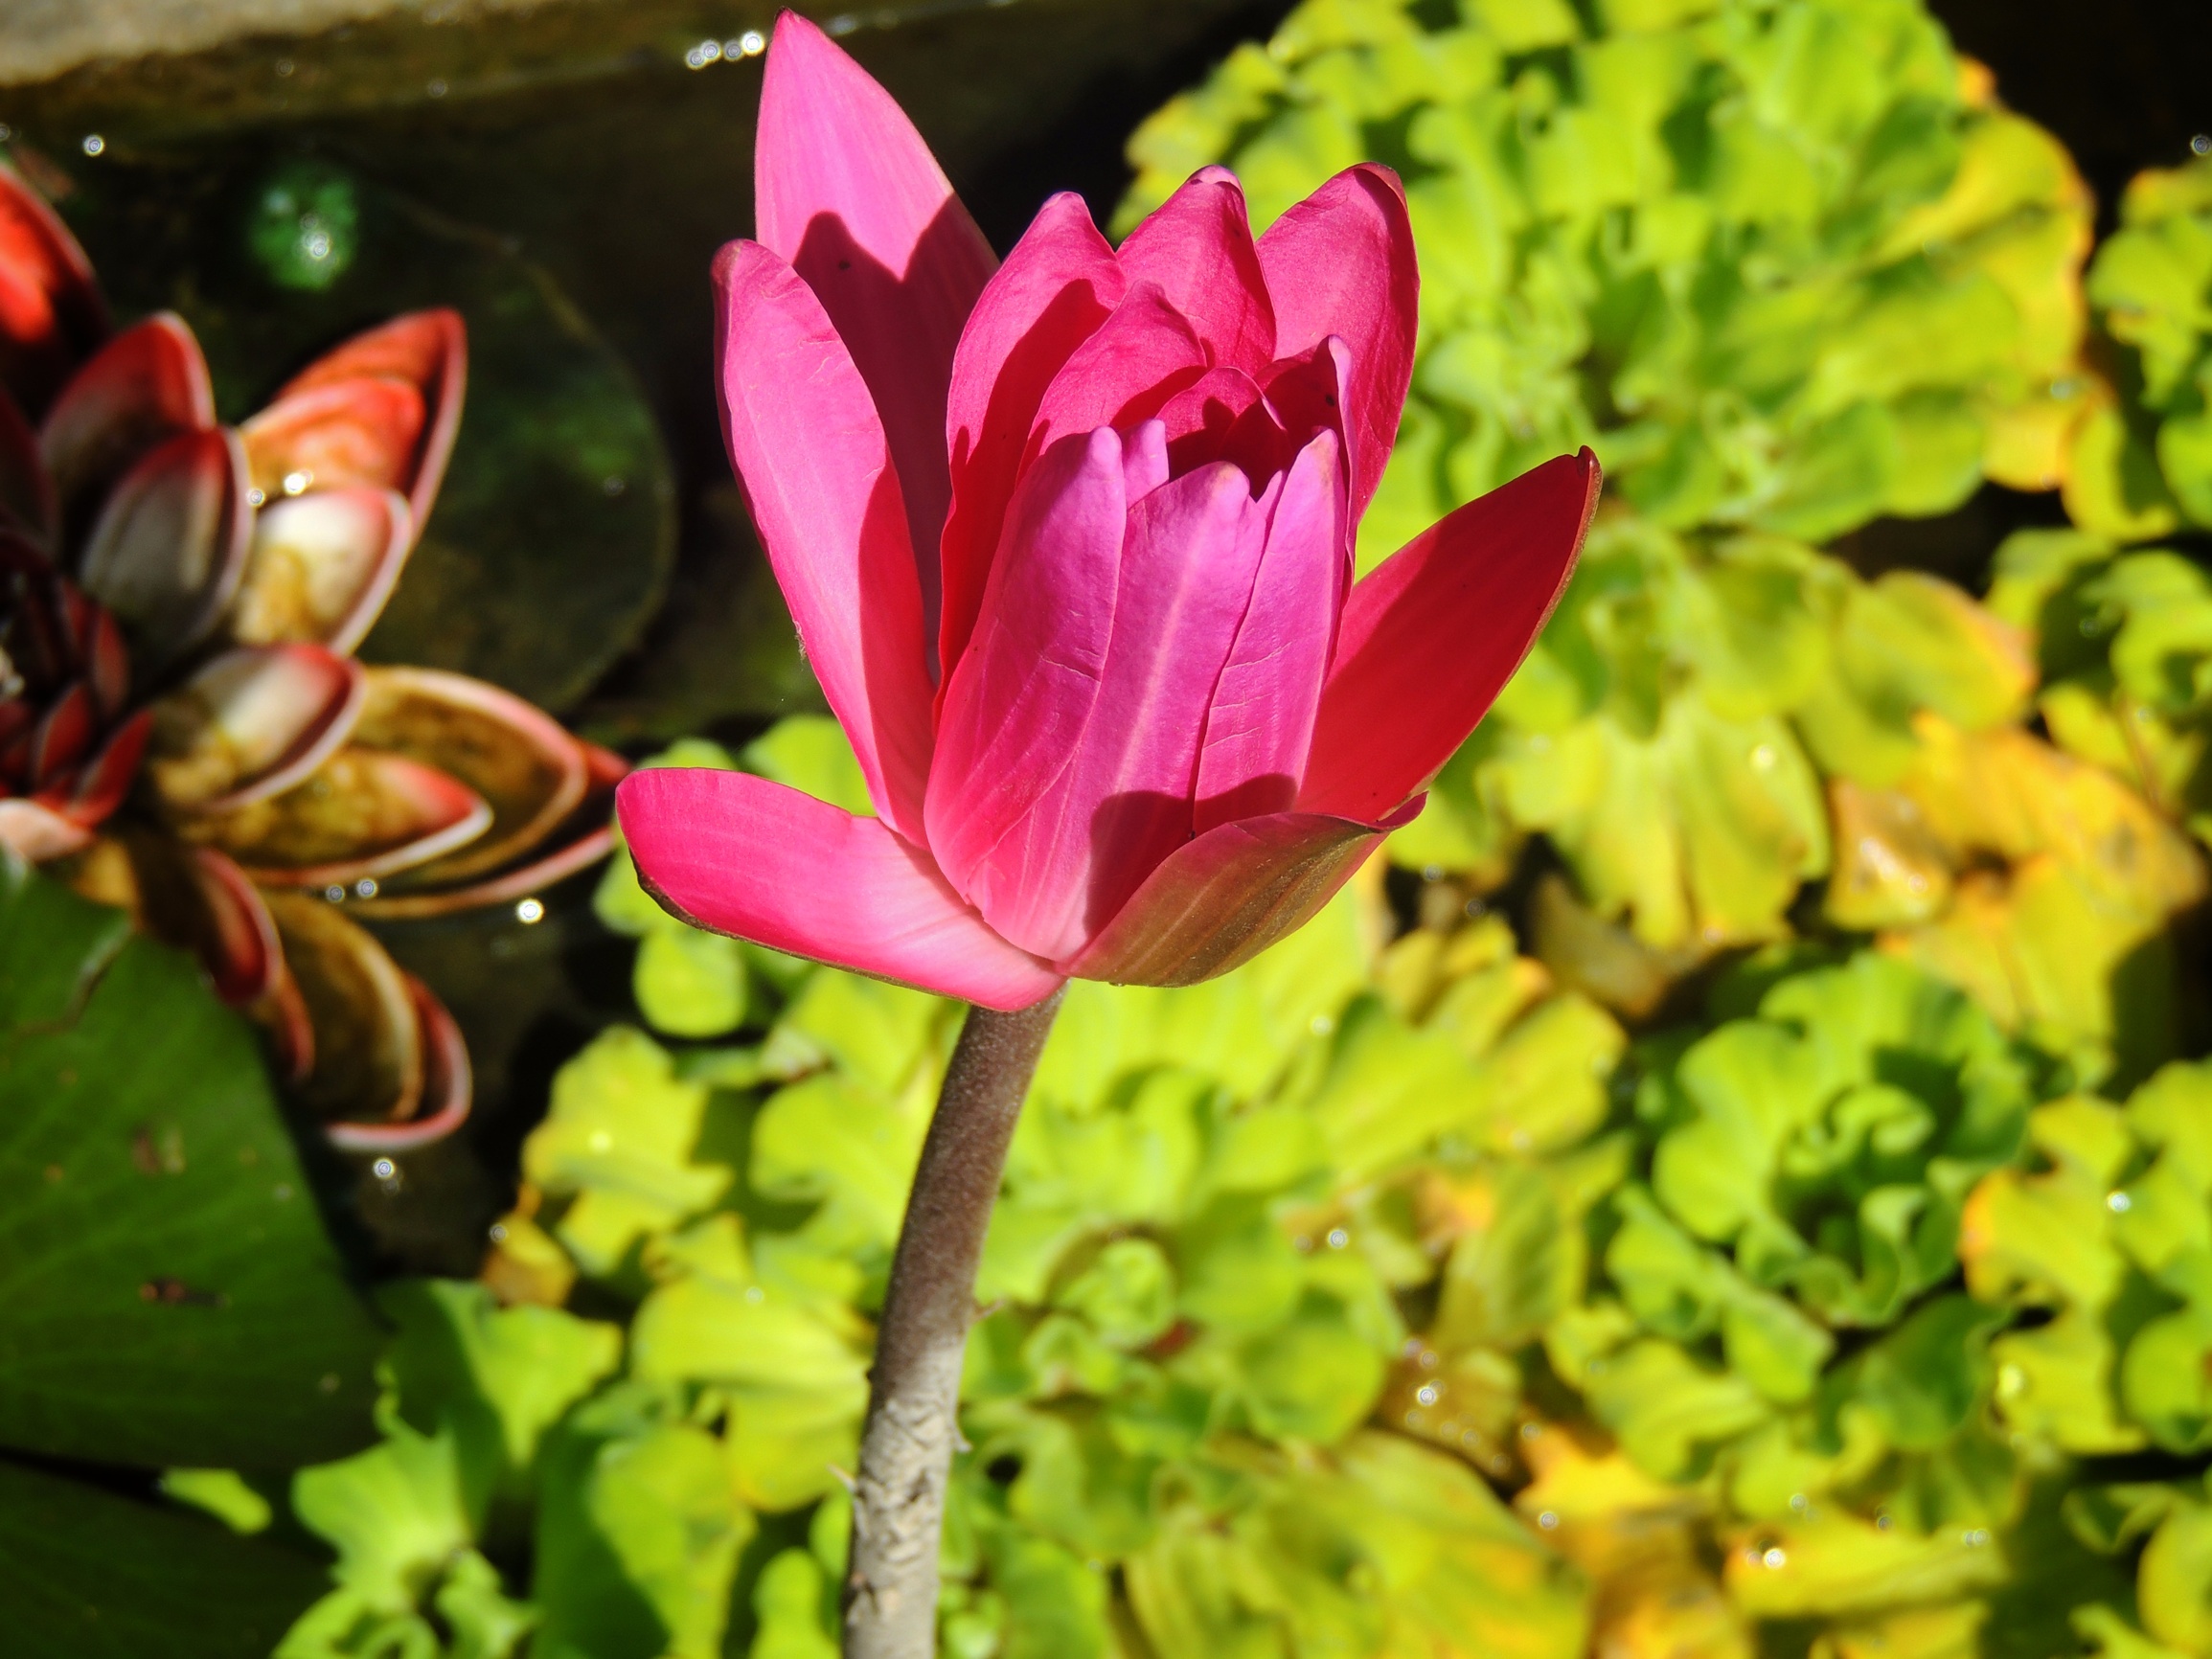 Lotus in sunlight